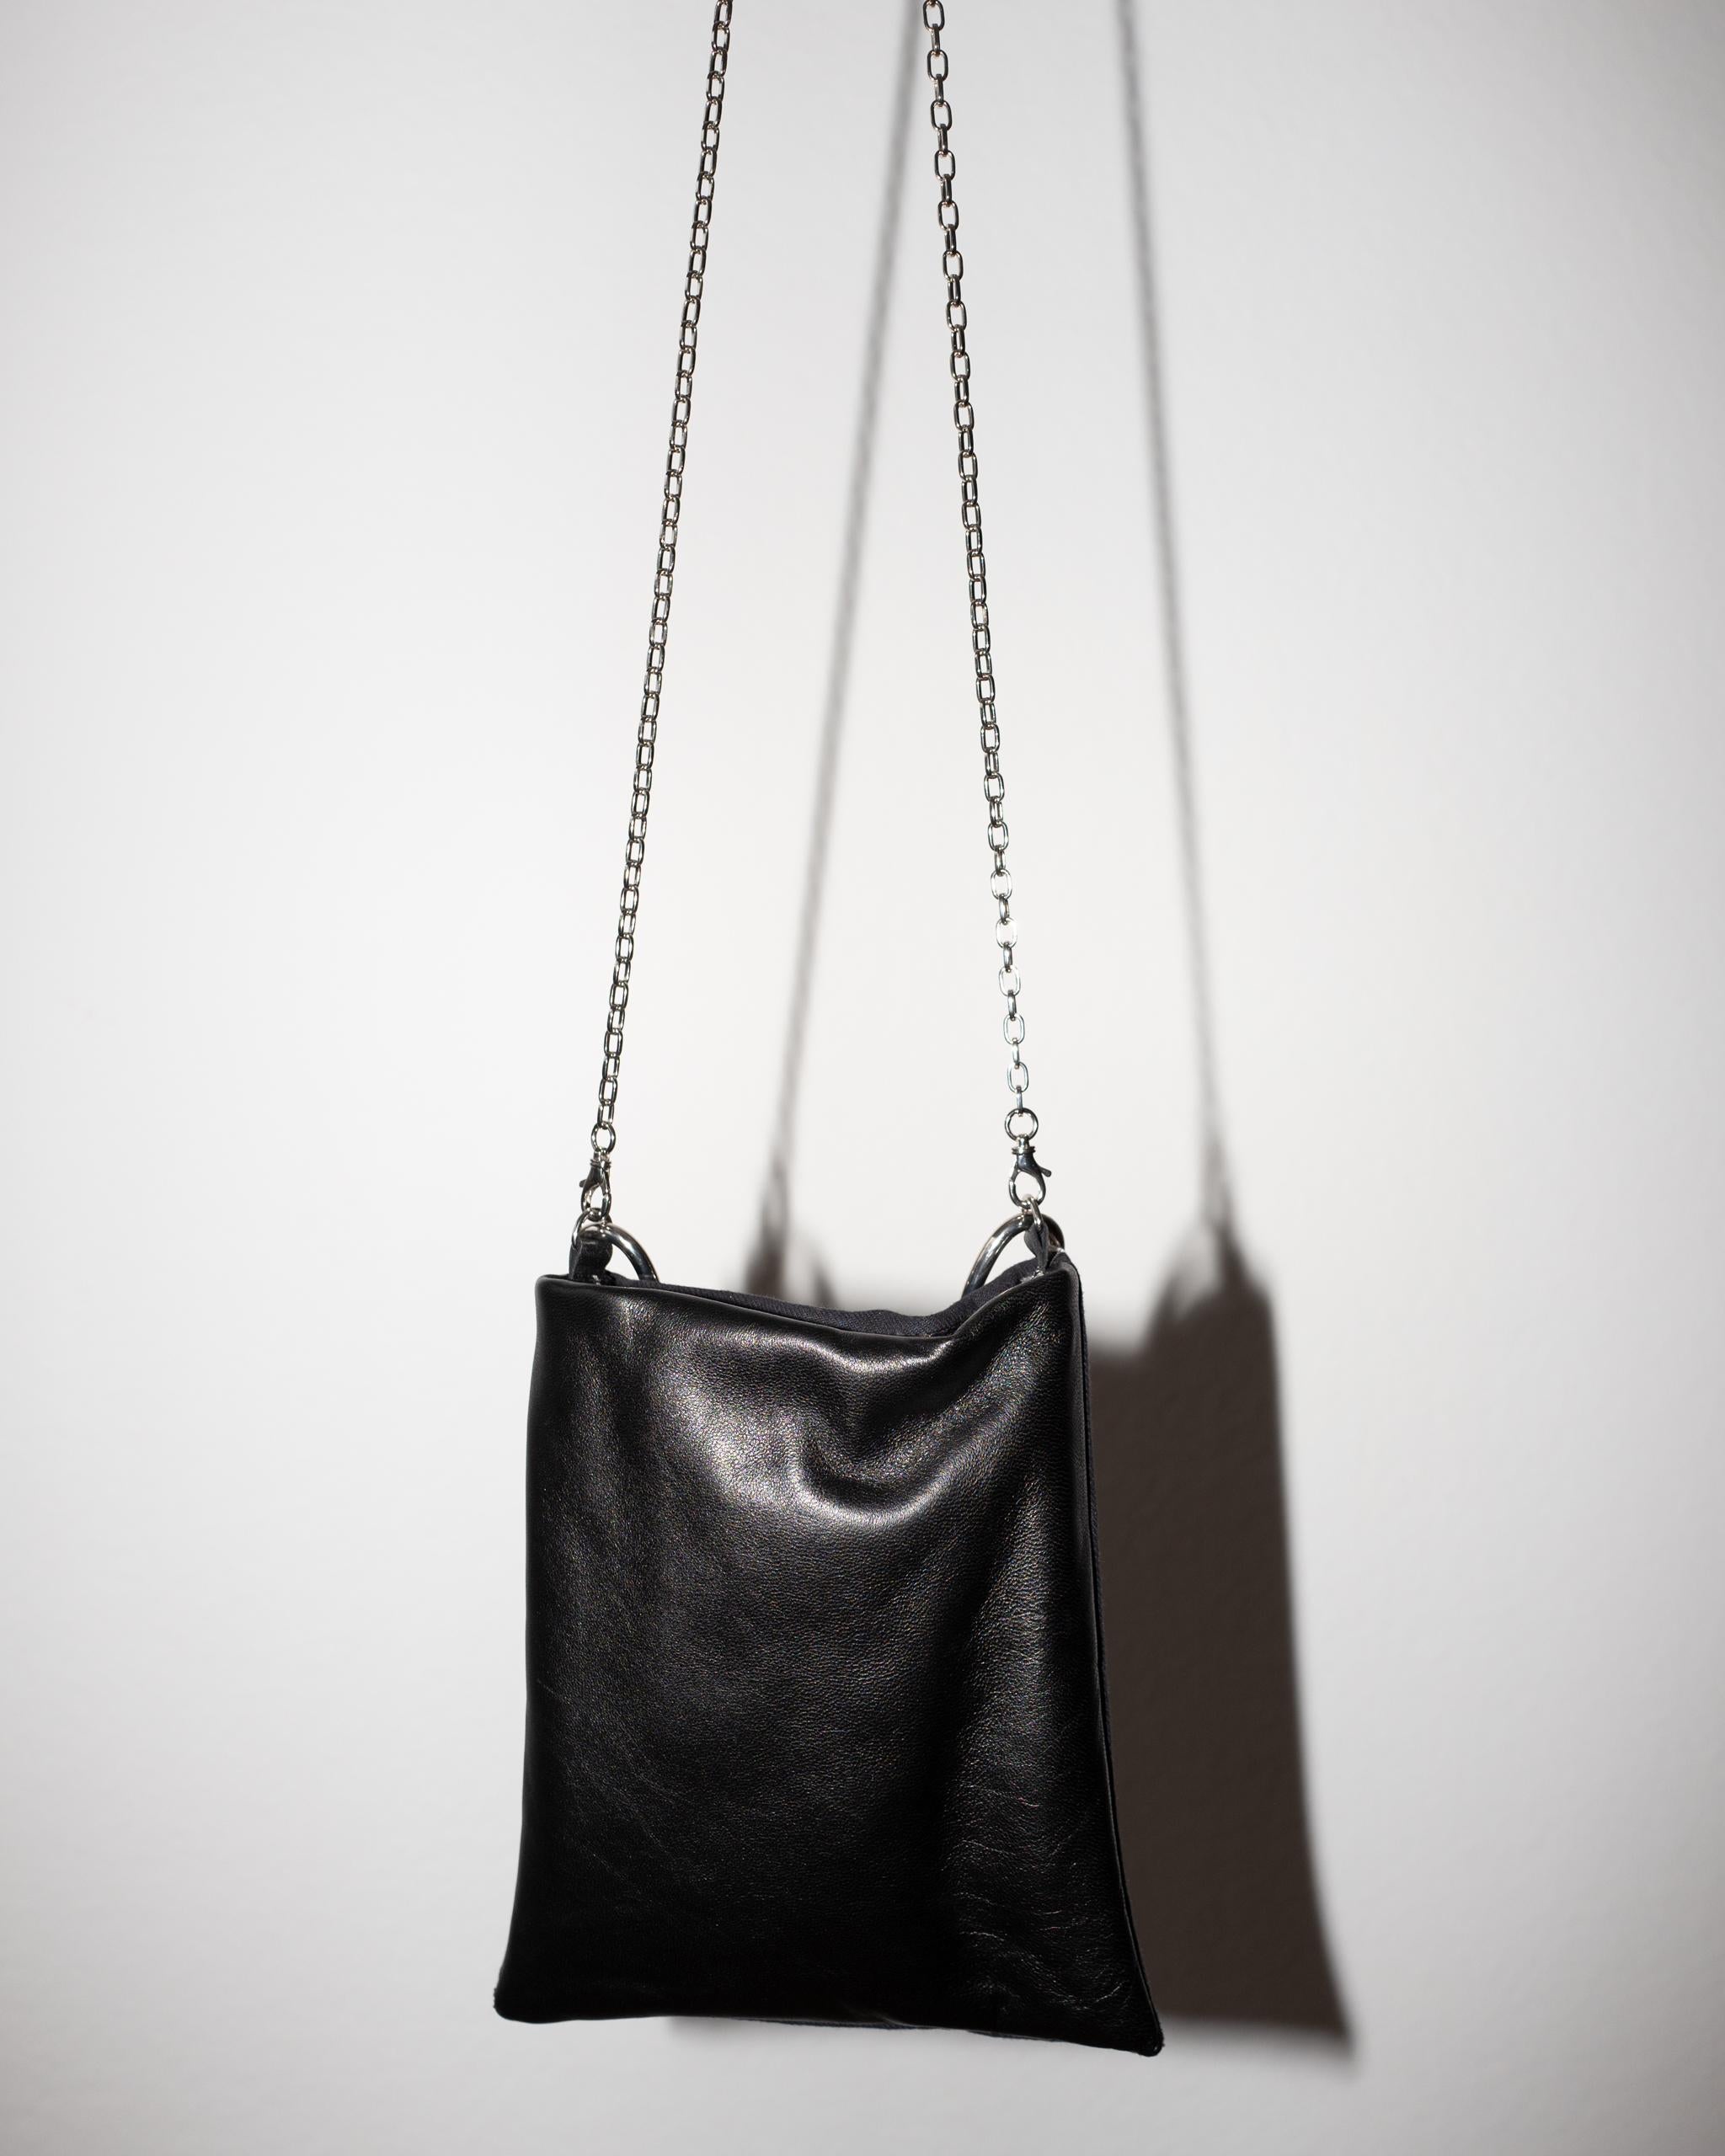 Crystal Star Embellished Black Evening Shoulder Bag Black Leather Chunky Chain 5